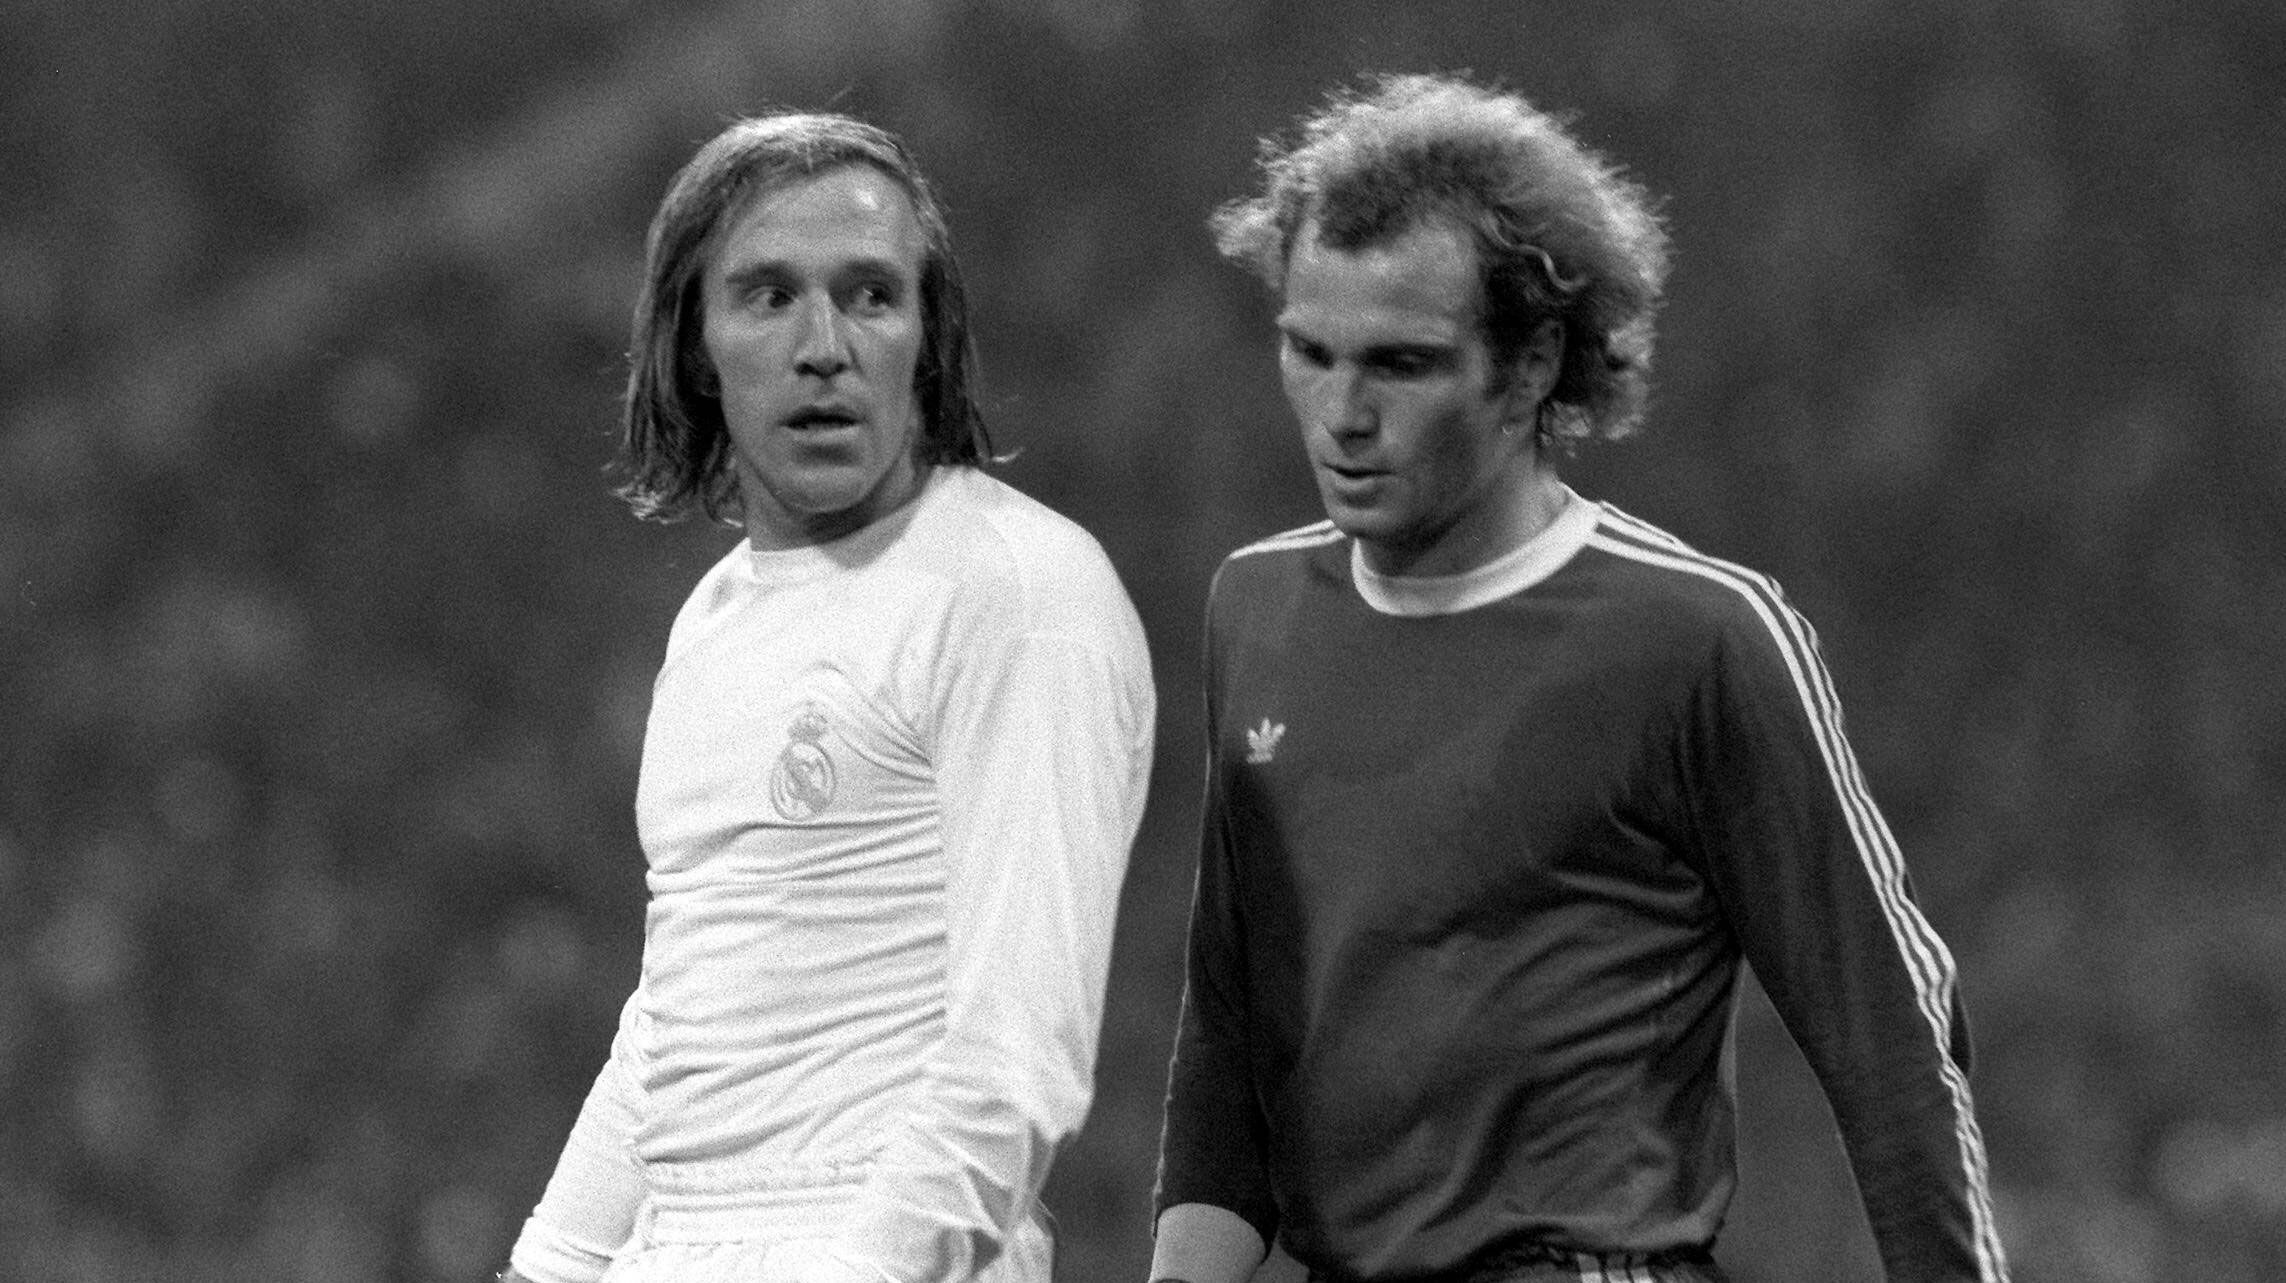 
                <strong>1976 - Halbfinale</strong><br>
                Zum ersten Mal kommt es 1976 im Halbfinale des Europapokals der Landesmeister zur Begegnung. Uli Hoeneß trifft auf Günter Netzer.
              